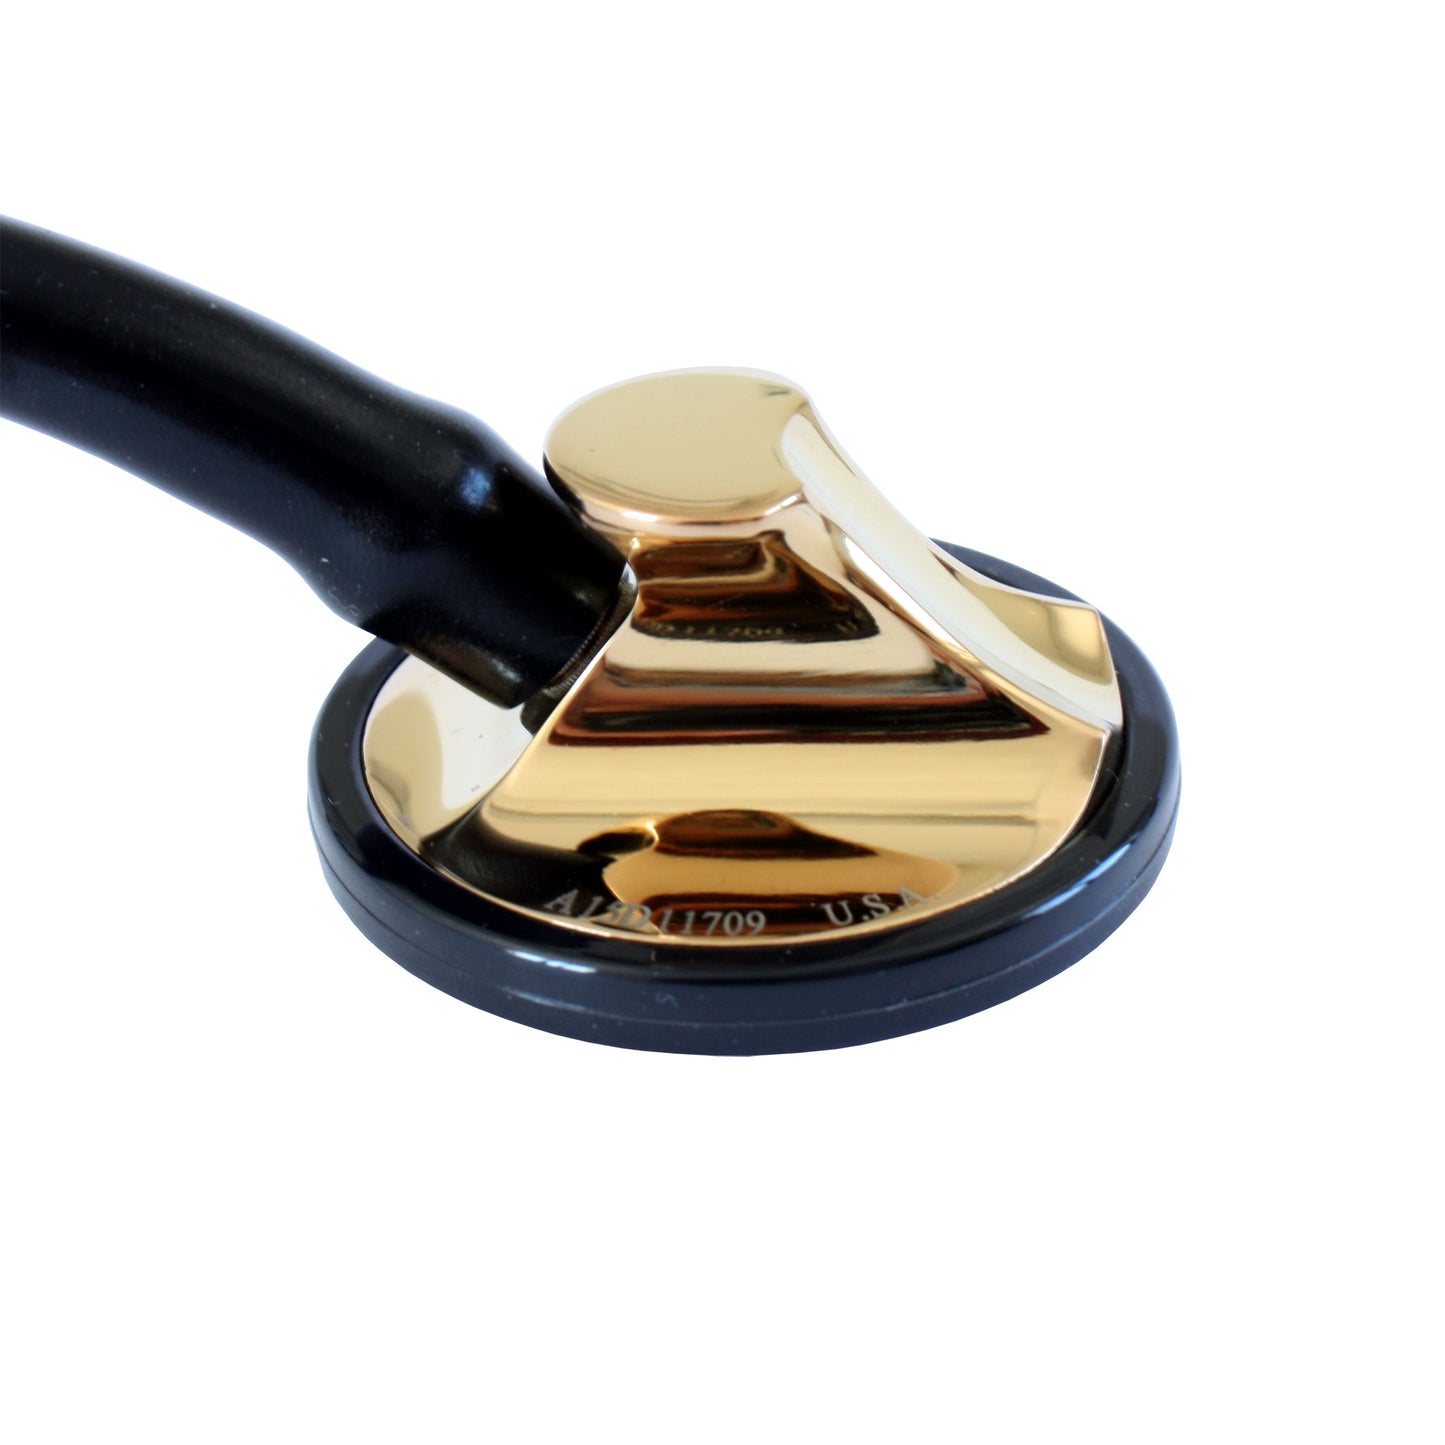 Littmann Master Cardiology Stethoscope: Black & Brass 2175 - Student Deal 3M Littmann